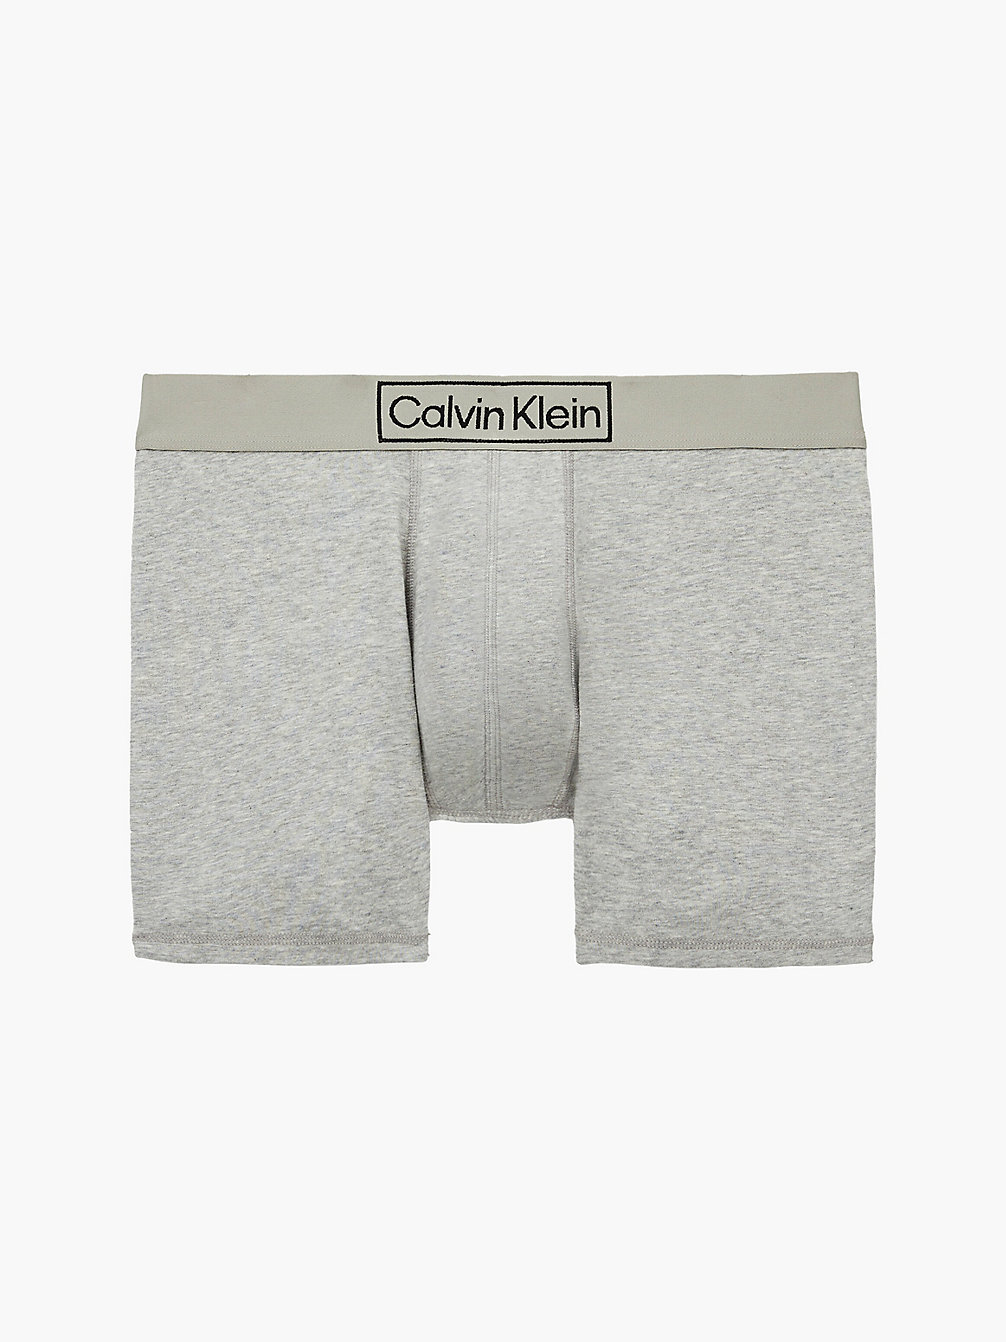 GREY HEATHER Boxers Briefs - Reimagined Heritage undefined men Calvin Klein